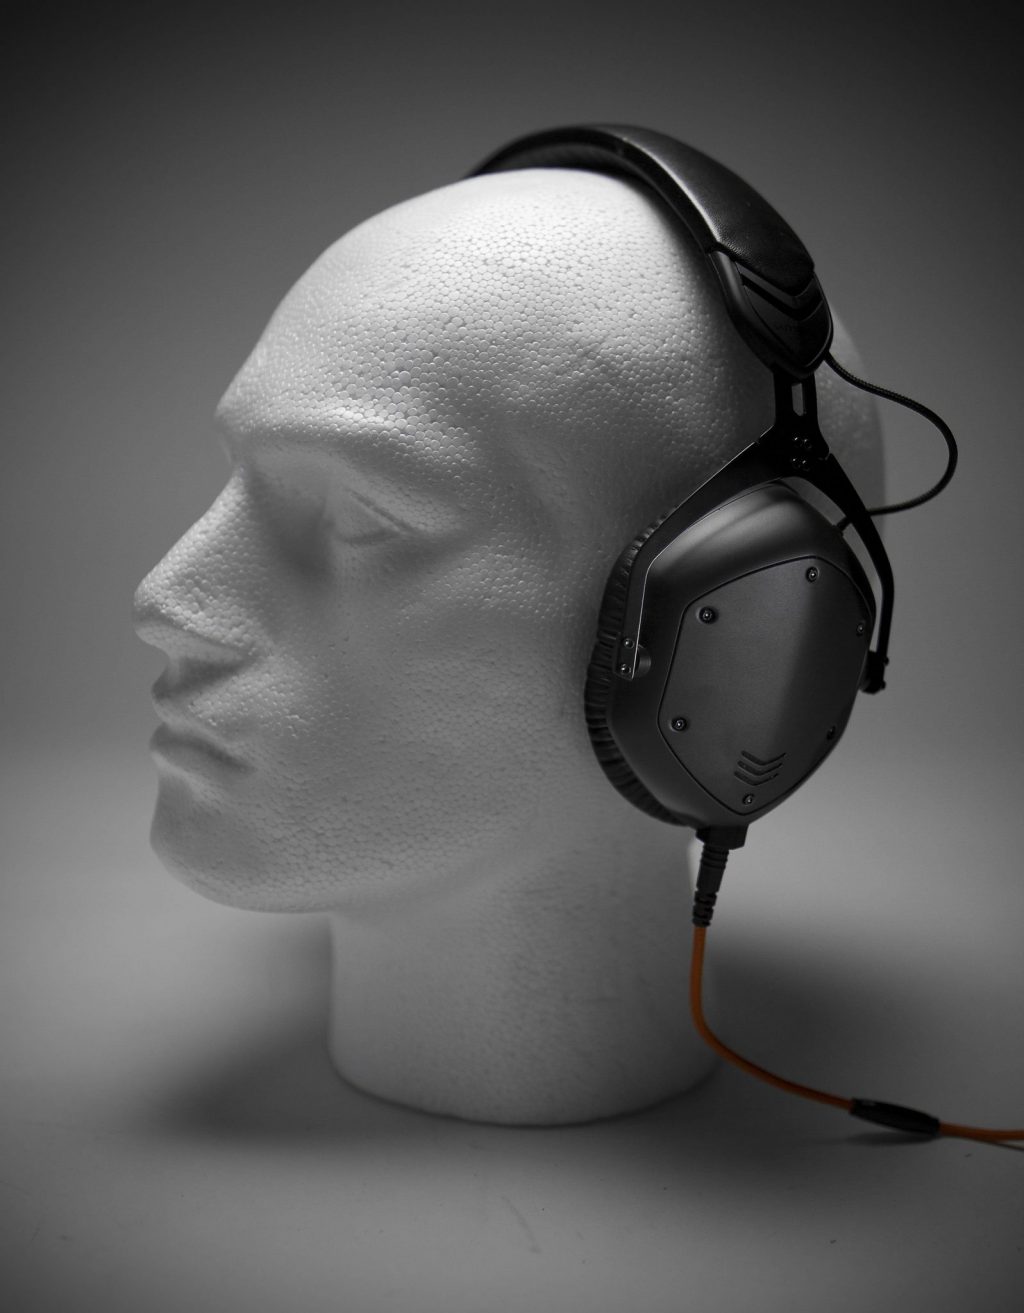 V-MODA Crossfade M-100 DJ headphones review (13)